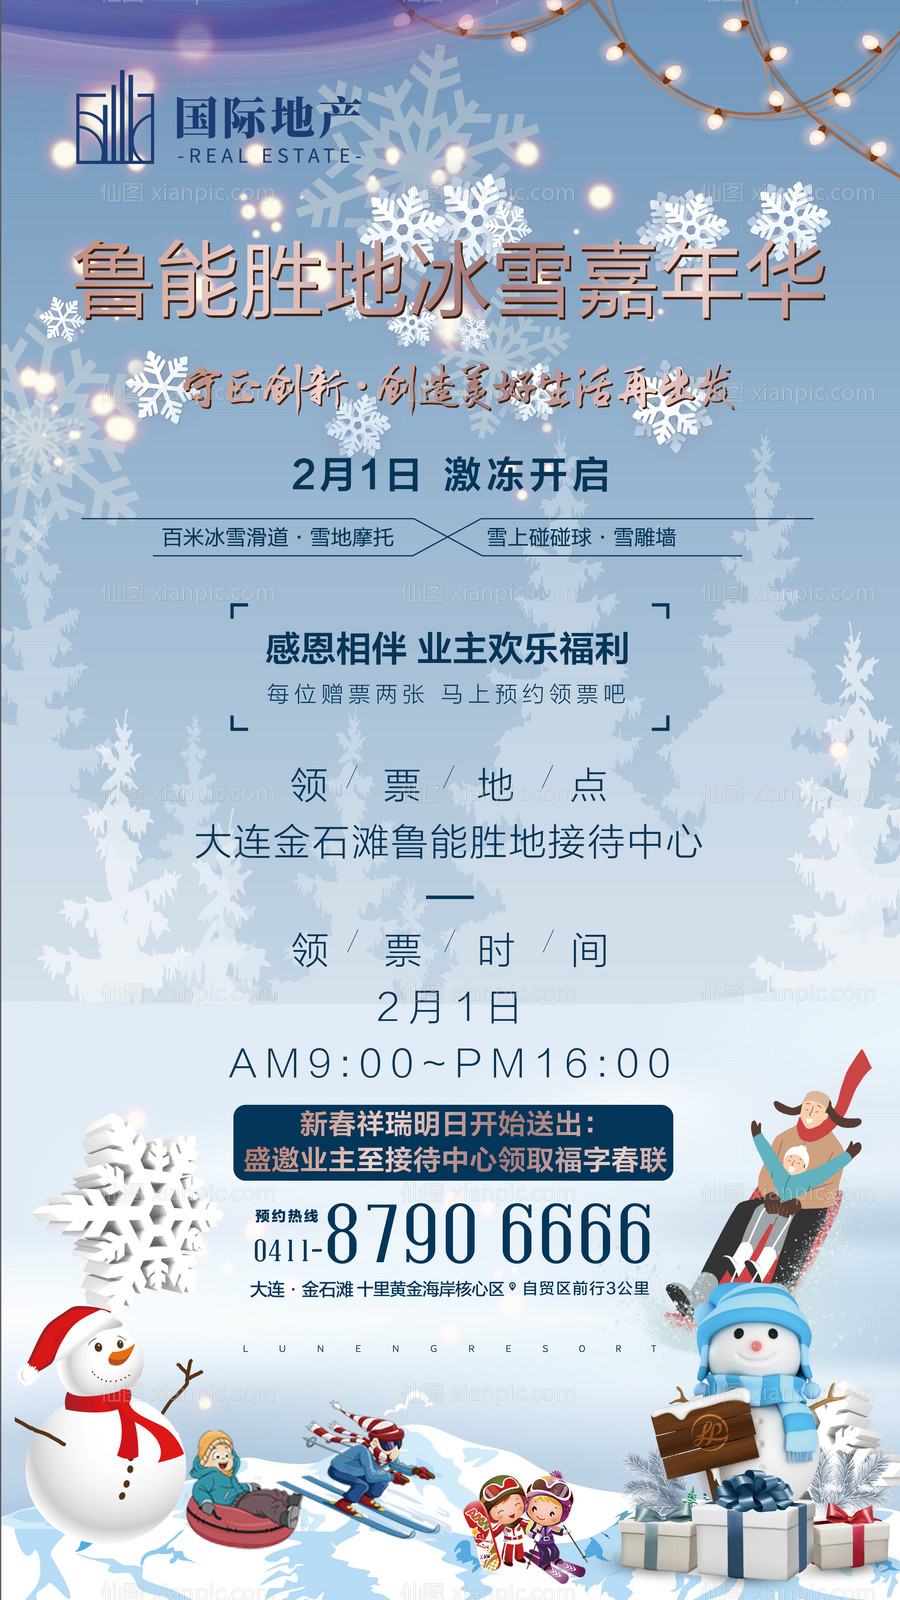 素材乐-房地产冰雪节嘉年华活动海报